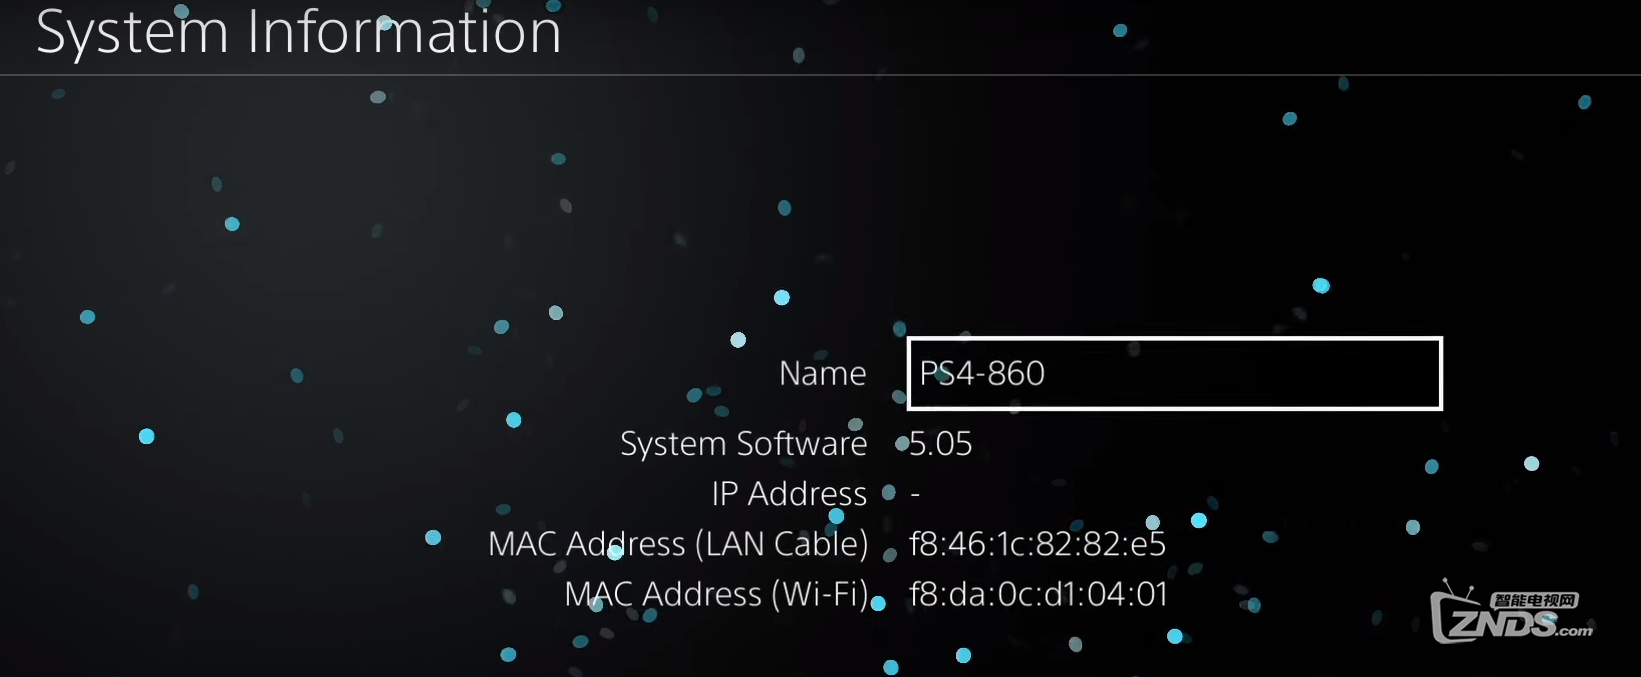 PS4主机破解教程以及游戏安装教程，到5.05 4.55 4.05等系统